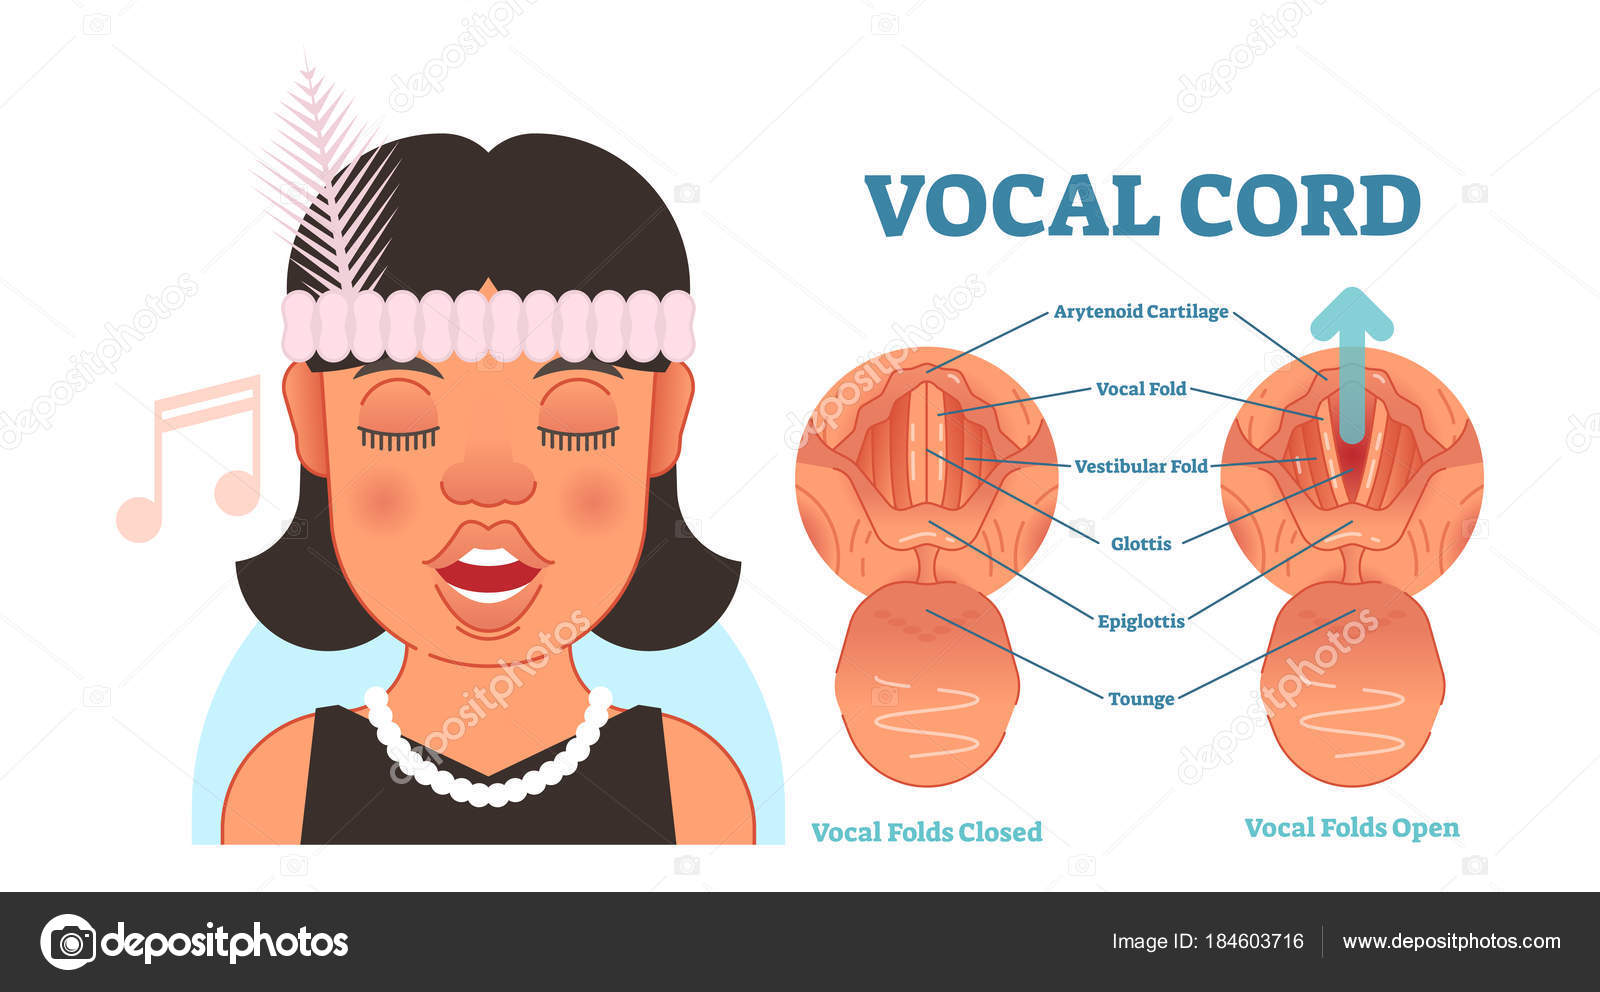 69 ilustraciones de stock de Cuerda vocal | Depositphotos®